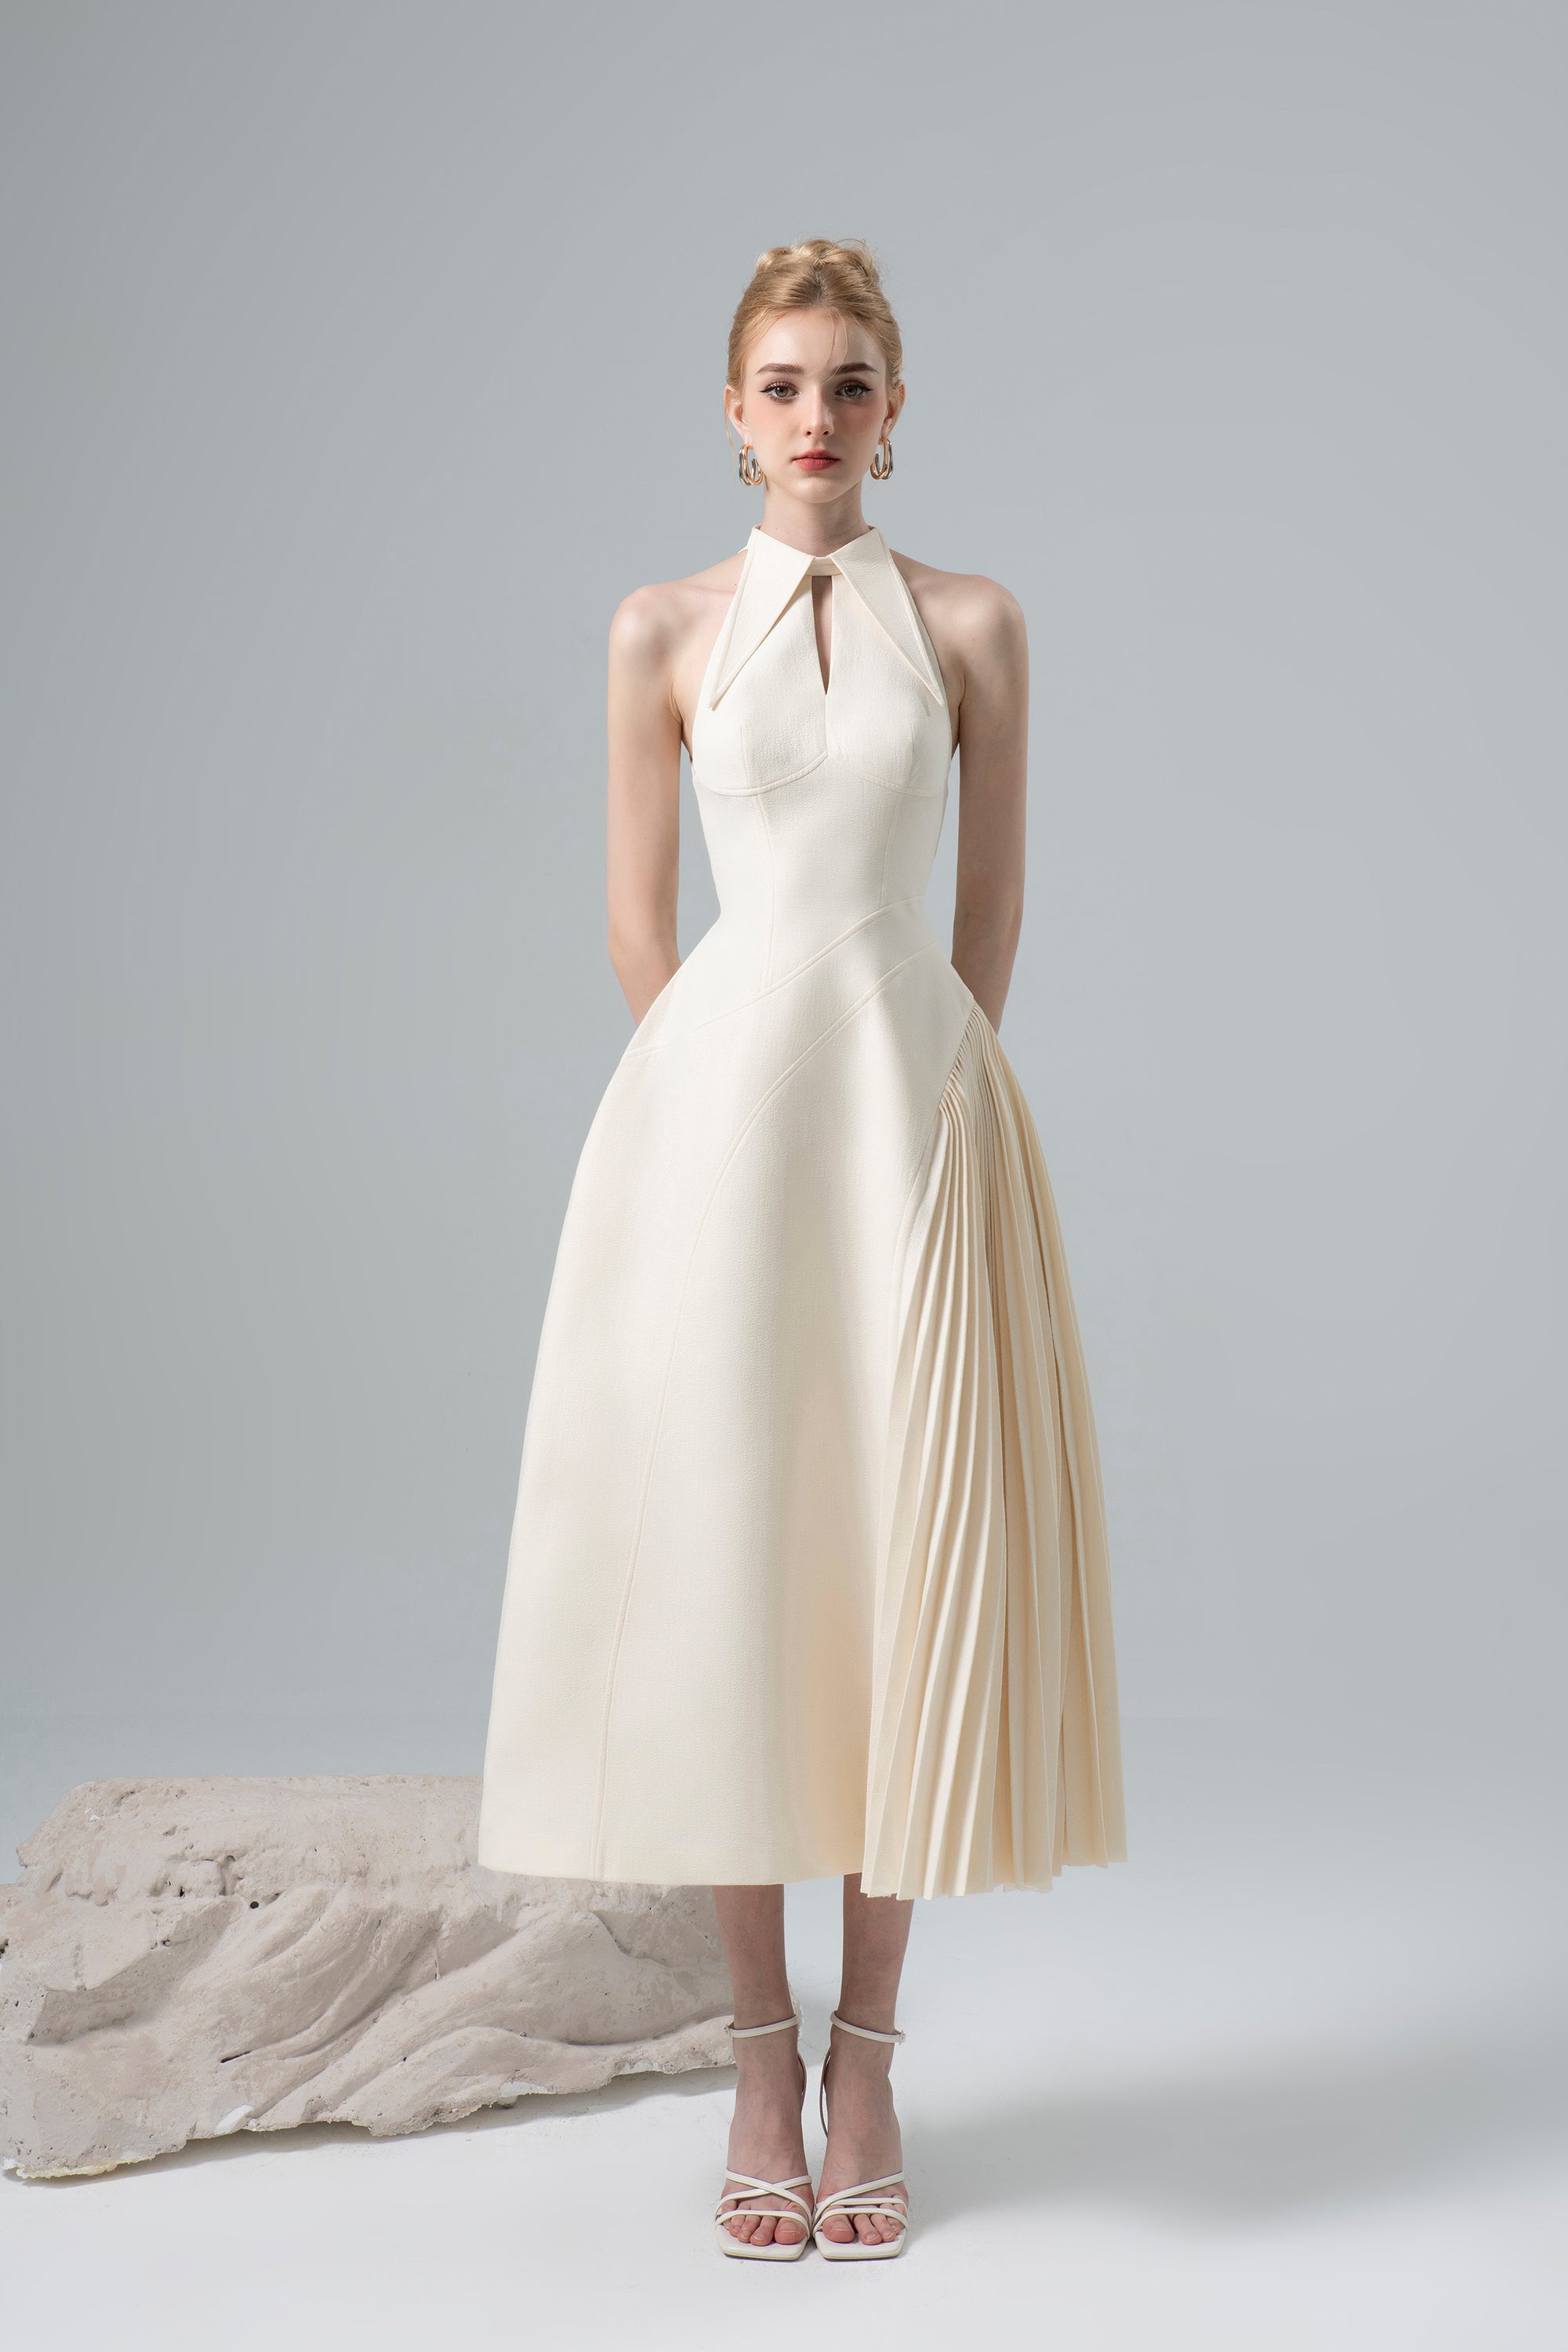 Suv007 váy 2 dây maxi trắng xòe 2 tầng nữ tính bánh bèo đầm hai dây xếp ly